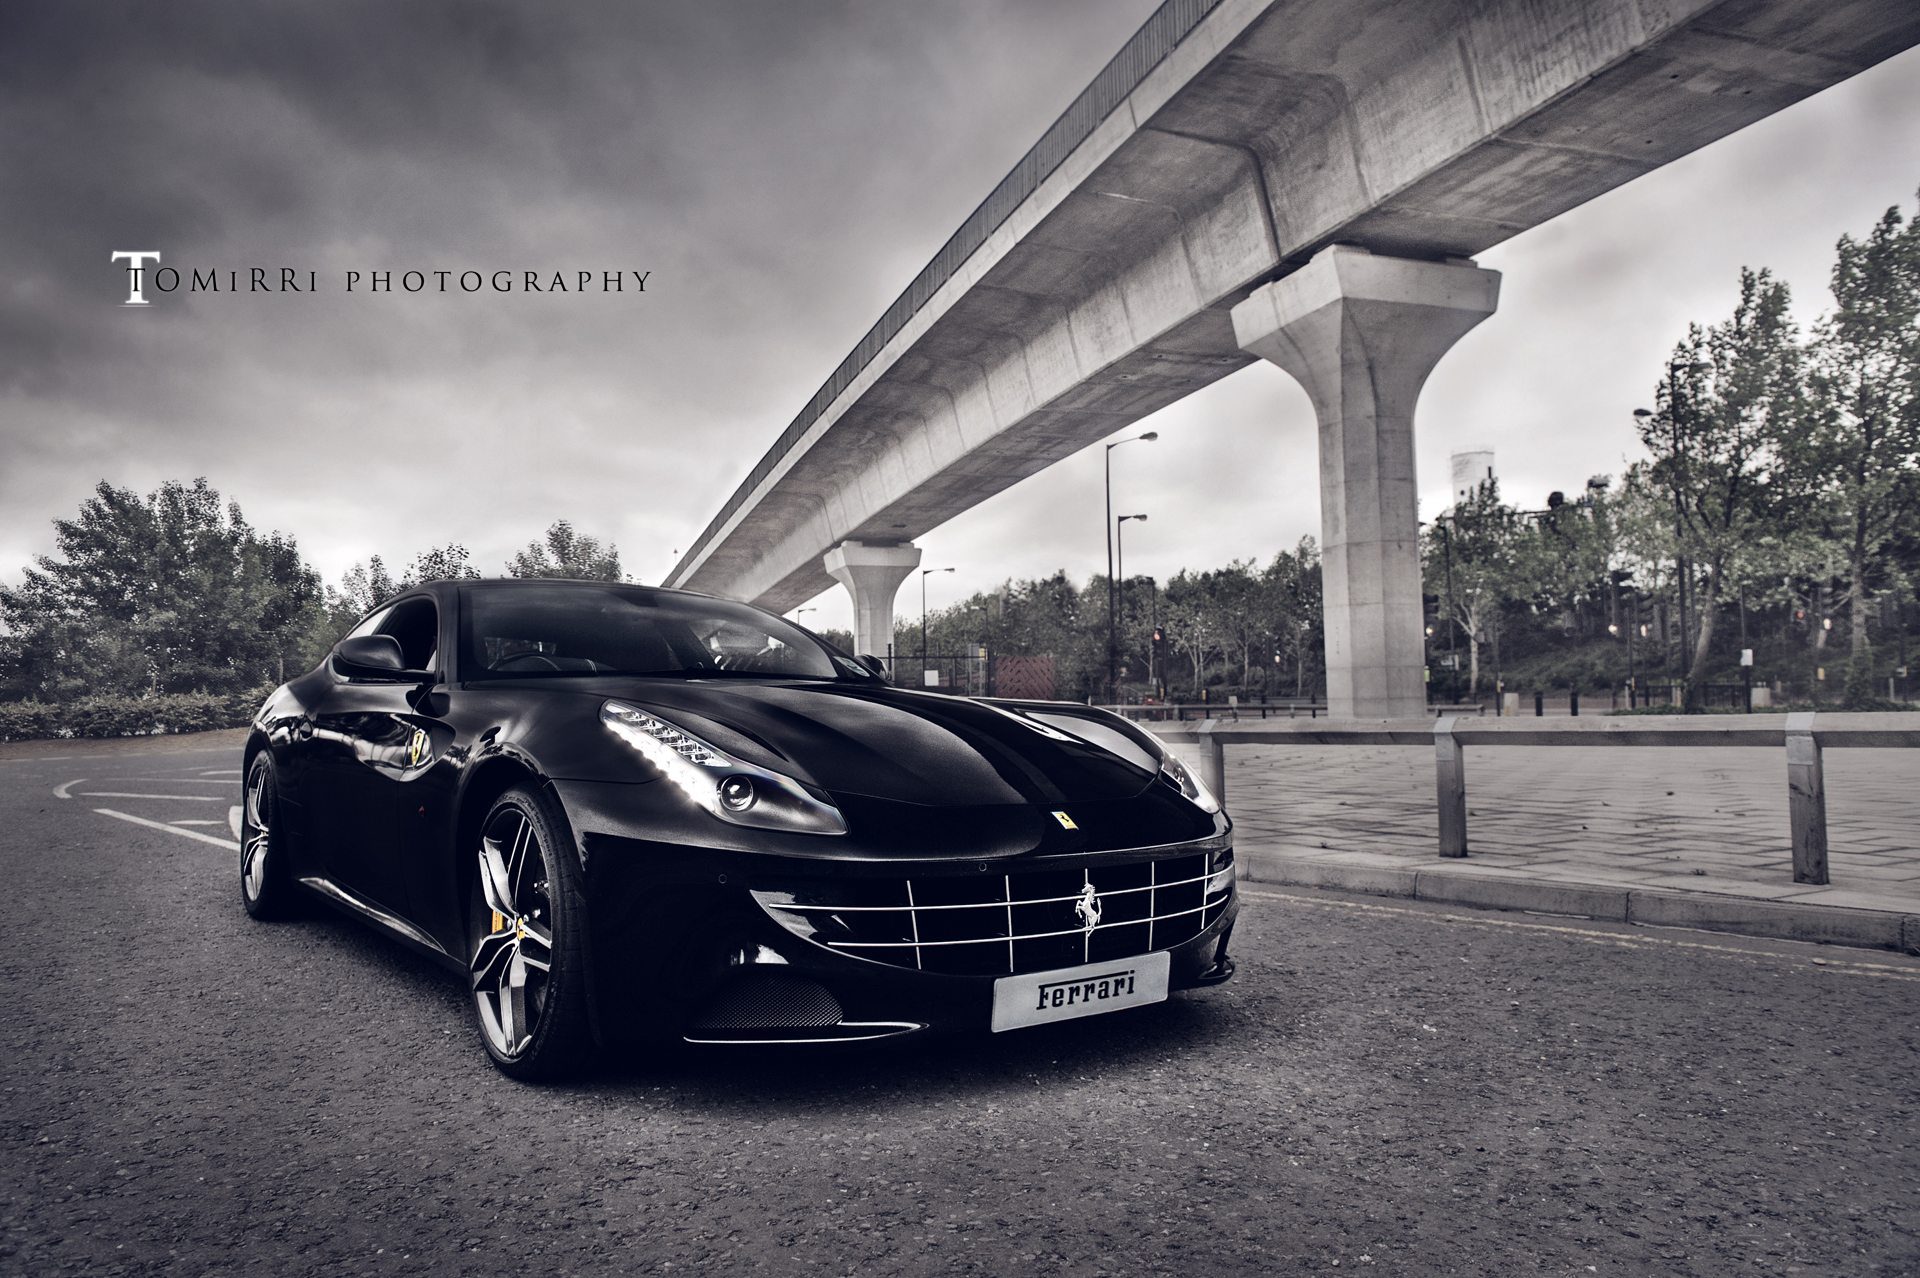 Tomirri Photography Photoshoot Of A Gorgeous Black Ferrari FF